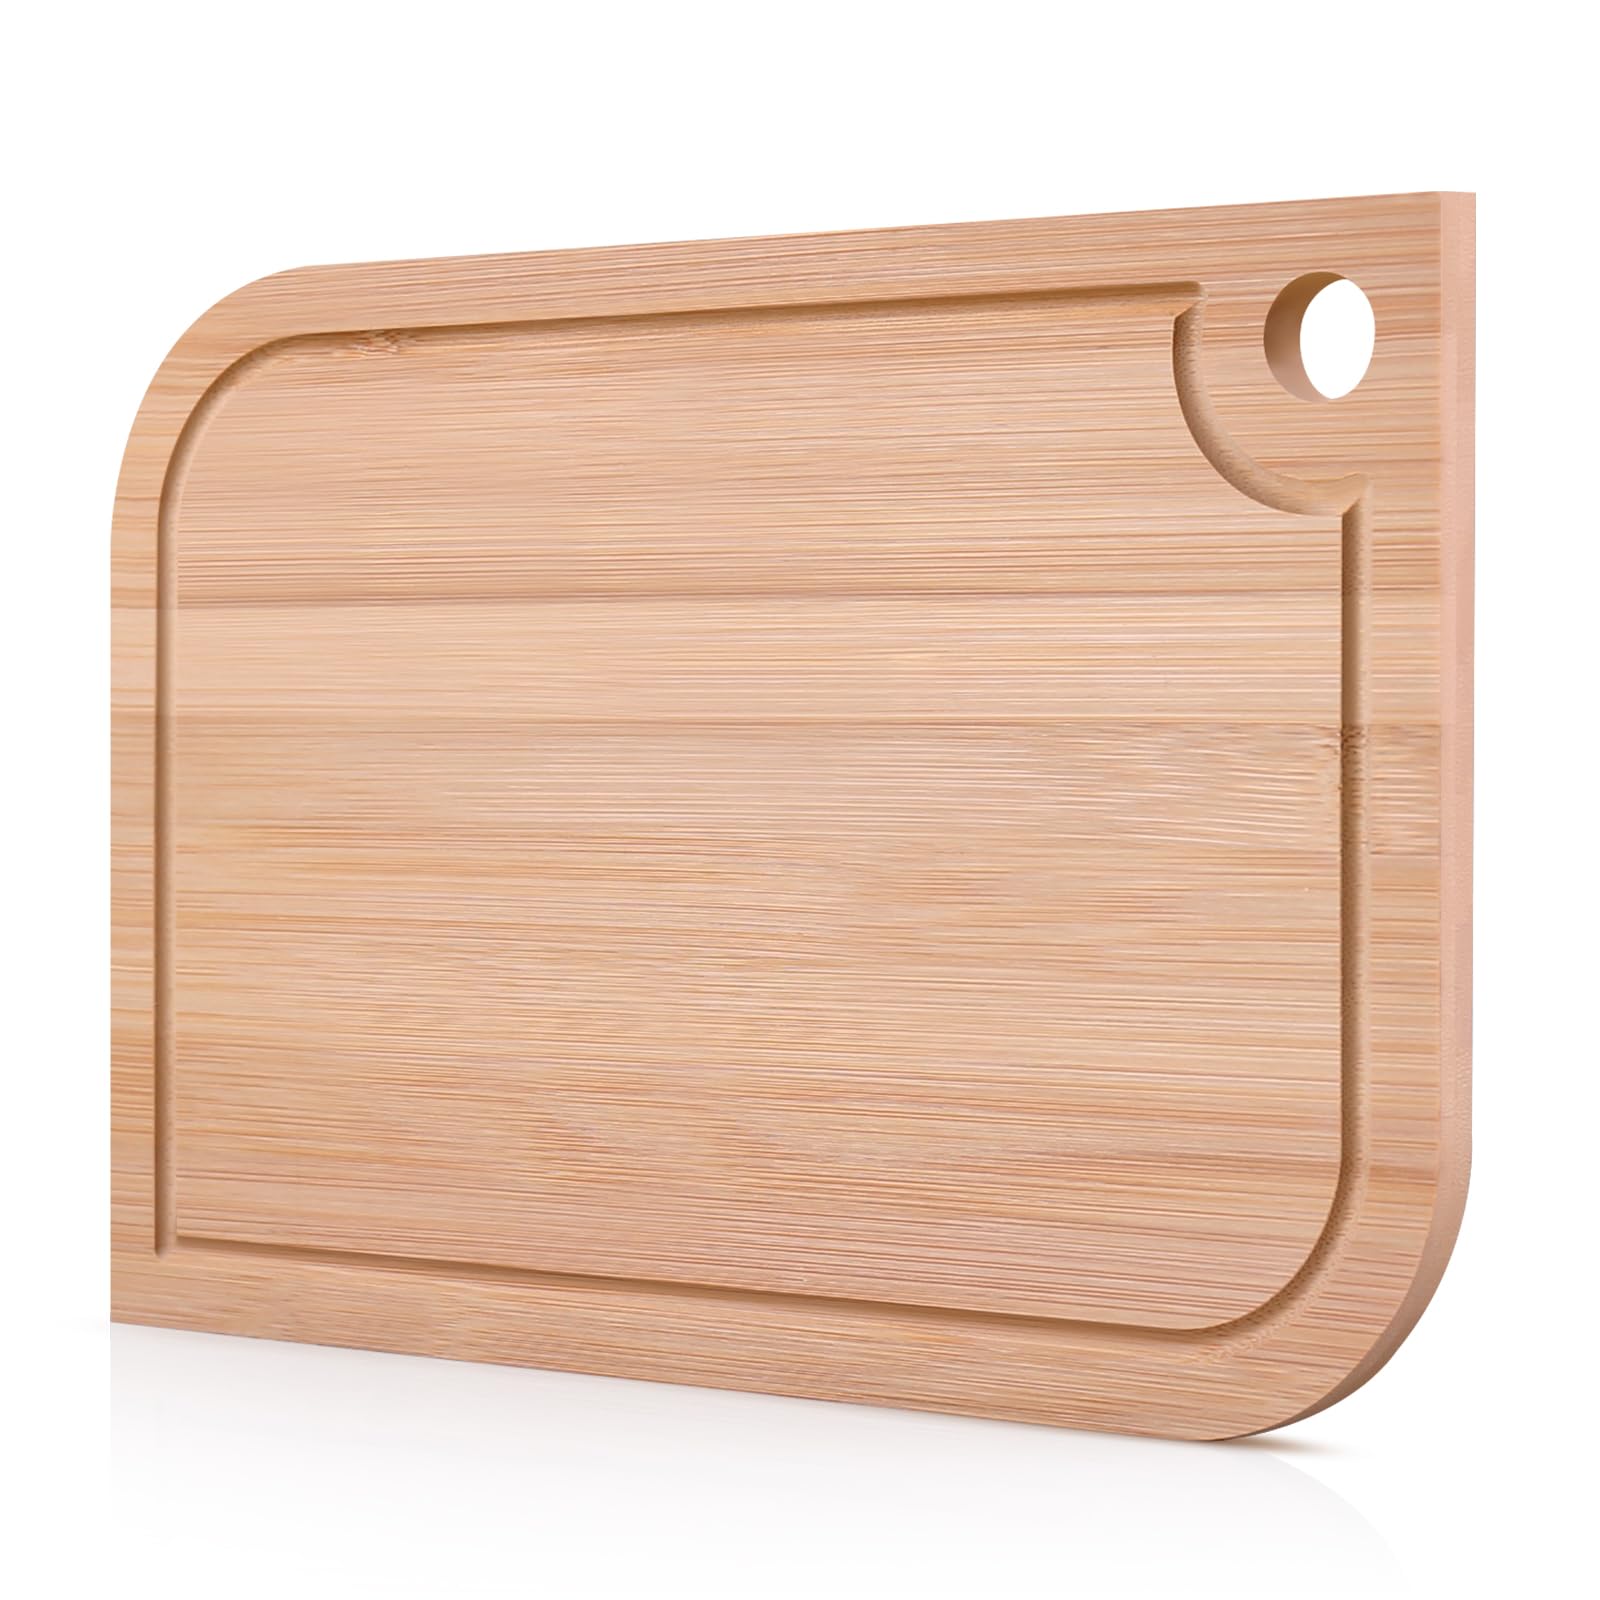 Shangrun 11.5"x 8" Small Bamboo Wood Cutting Board